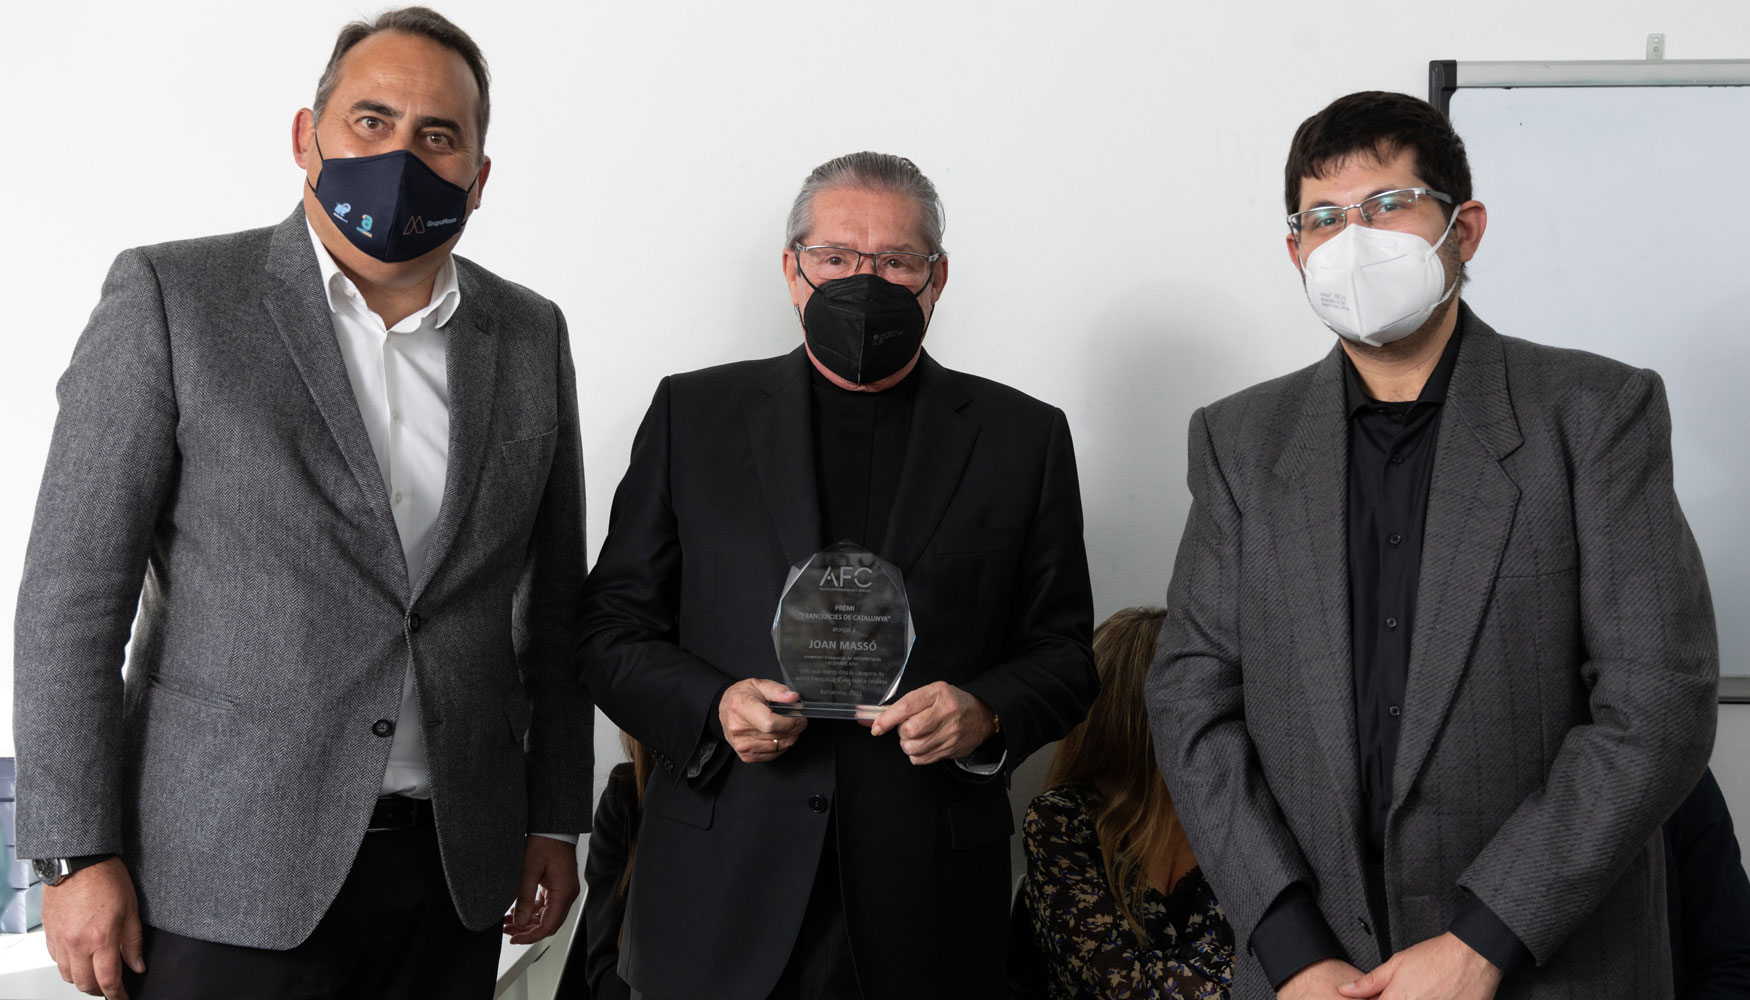 De izquierda a derecha, Marcos Moure, propietario y fundador de Grupo Moure; Joan Mass, franquiciado en Granollers de Autonetoil y Elefante Azul...